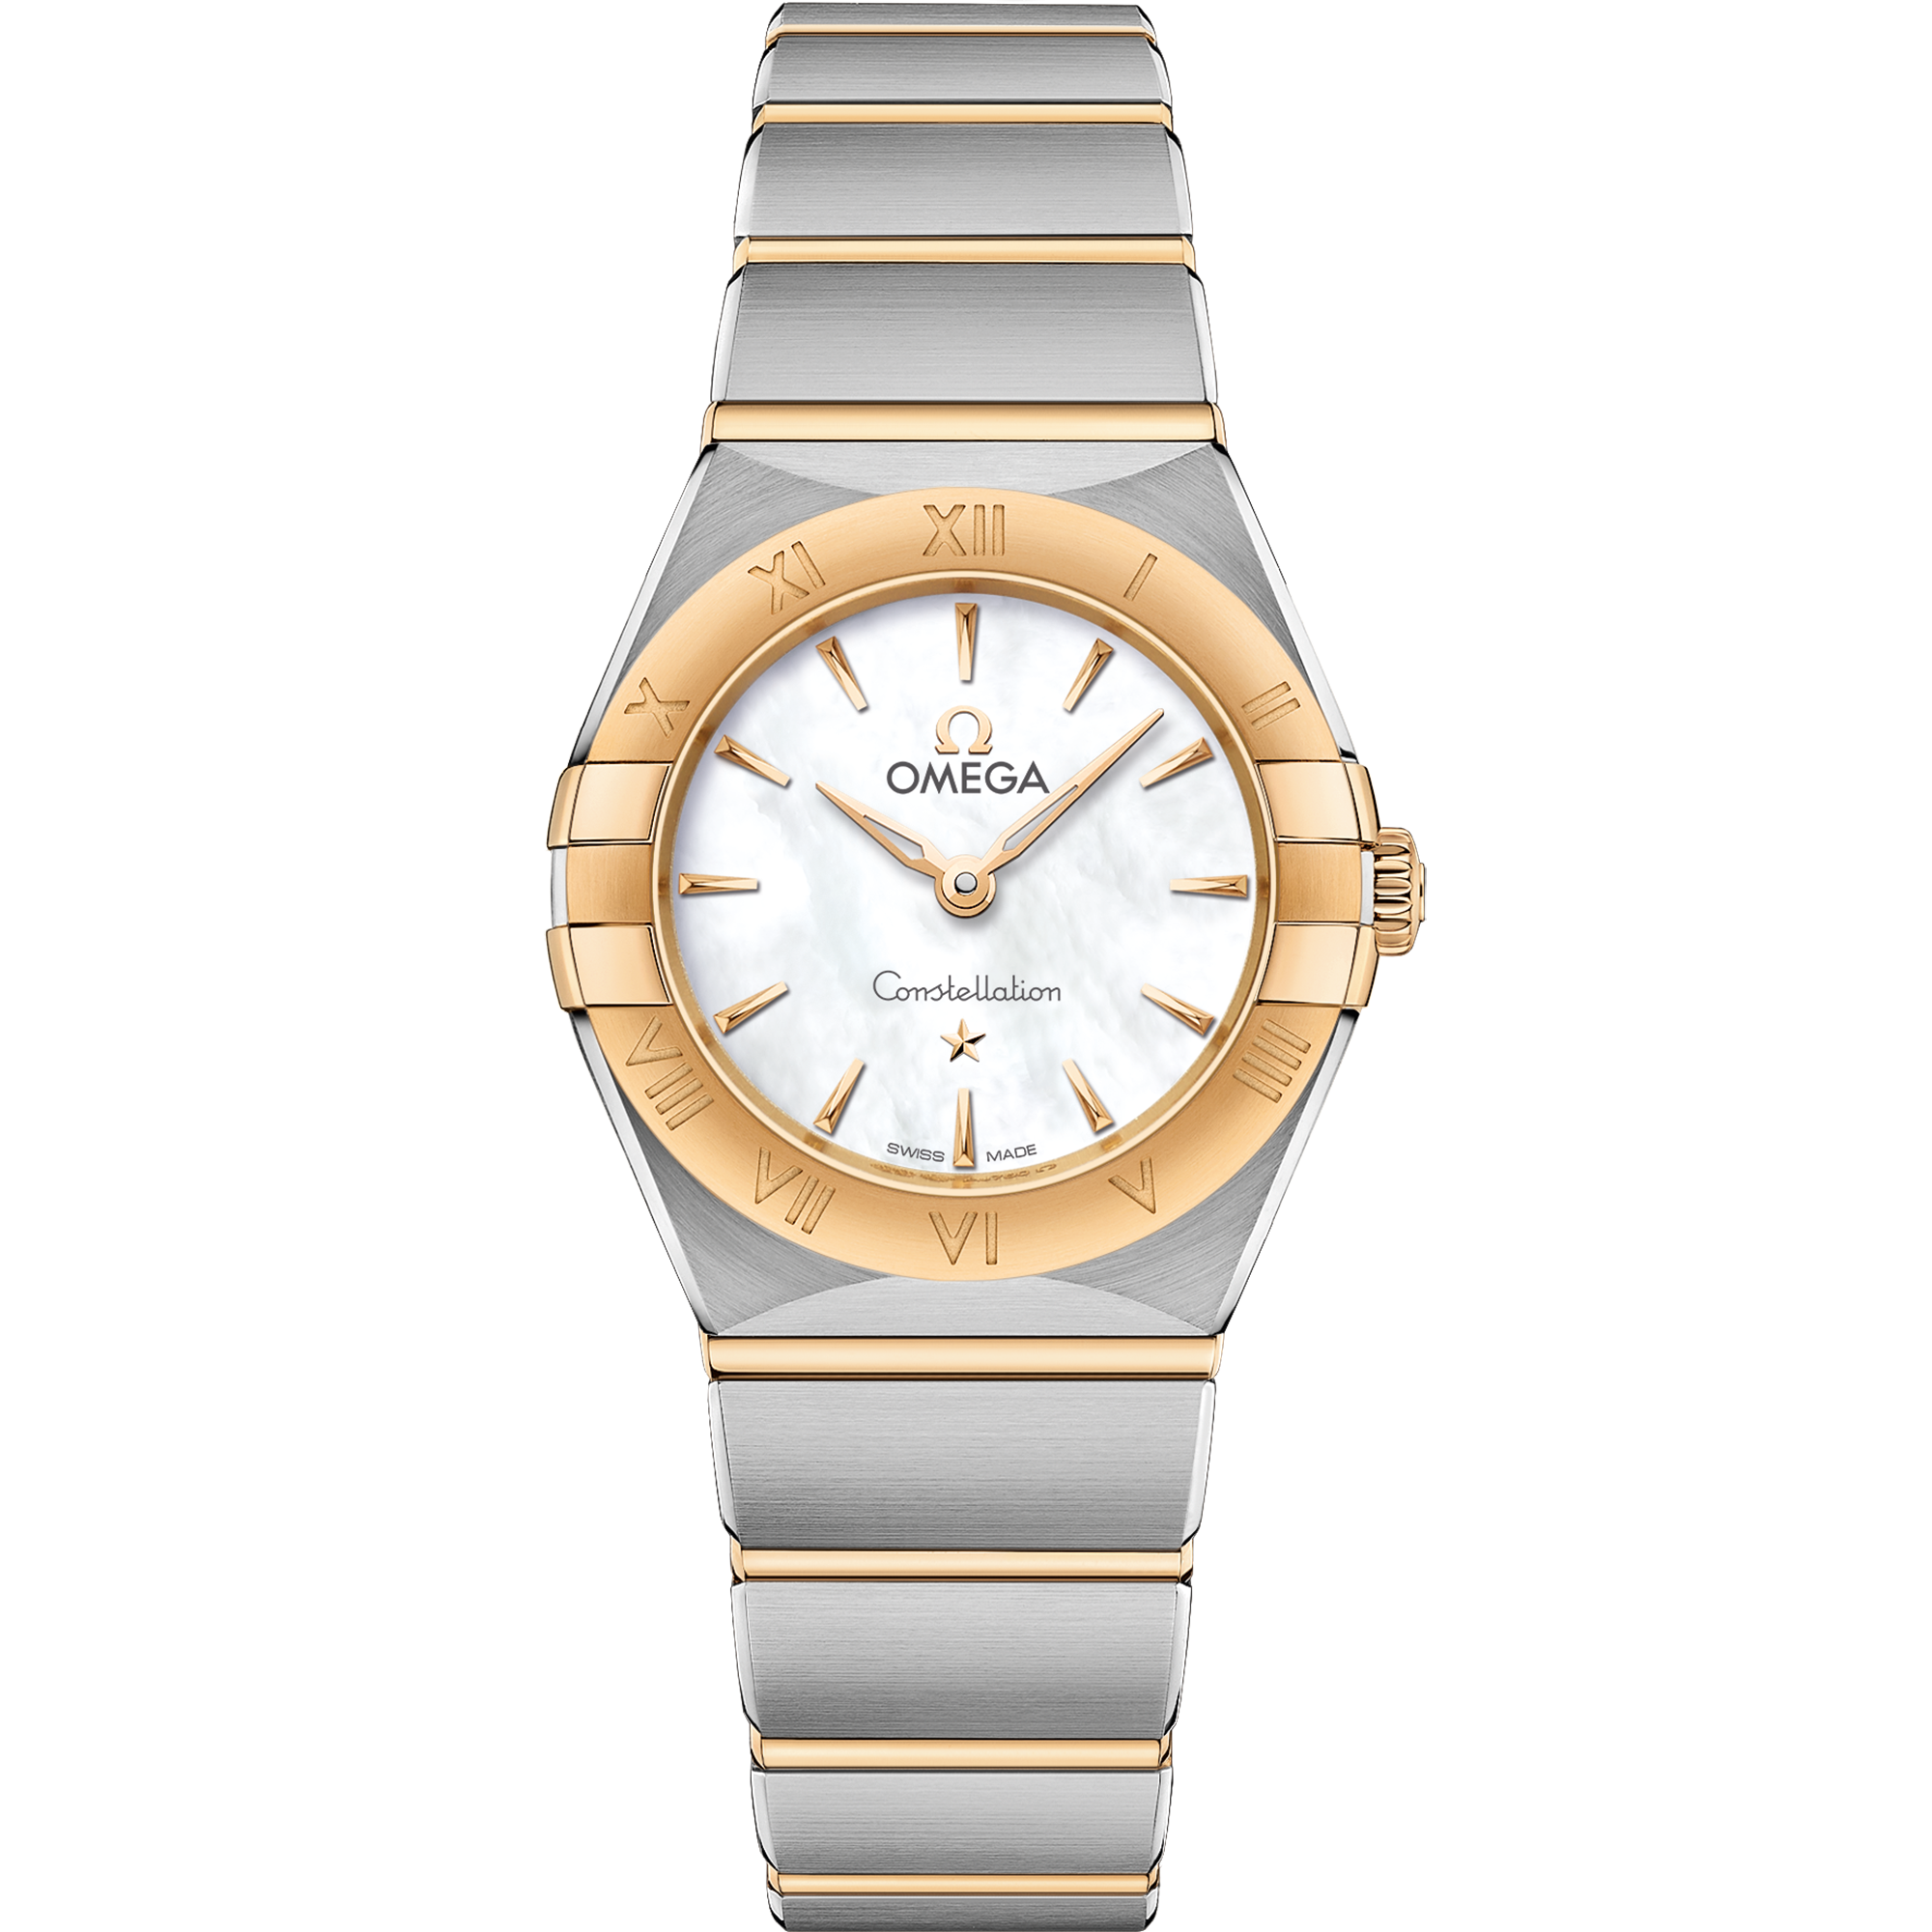 Uhr mit Weiß Zifferblatt auf Stahl - Gelbgold Gehäuse mit Stahl- und Gelbgoldband bracelet - Constellation 25 mm, Stahl - Gelbgold mit Stahl- und Gelbgoldband - 131.20.25.60.05.002